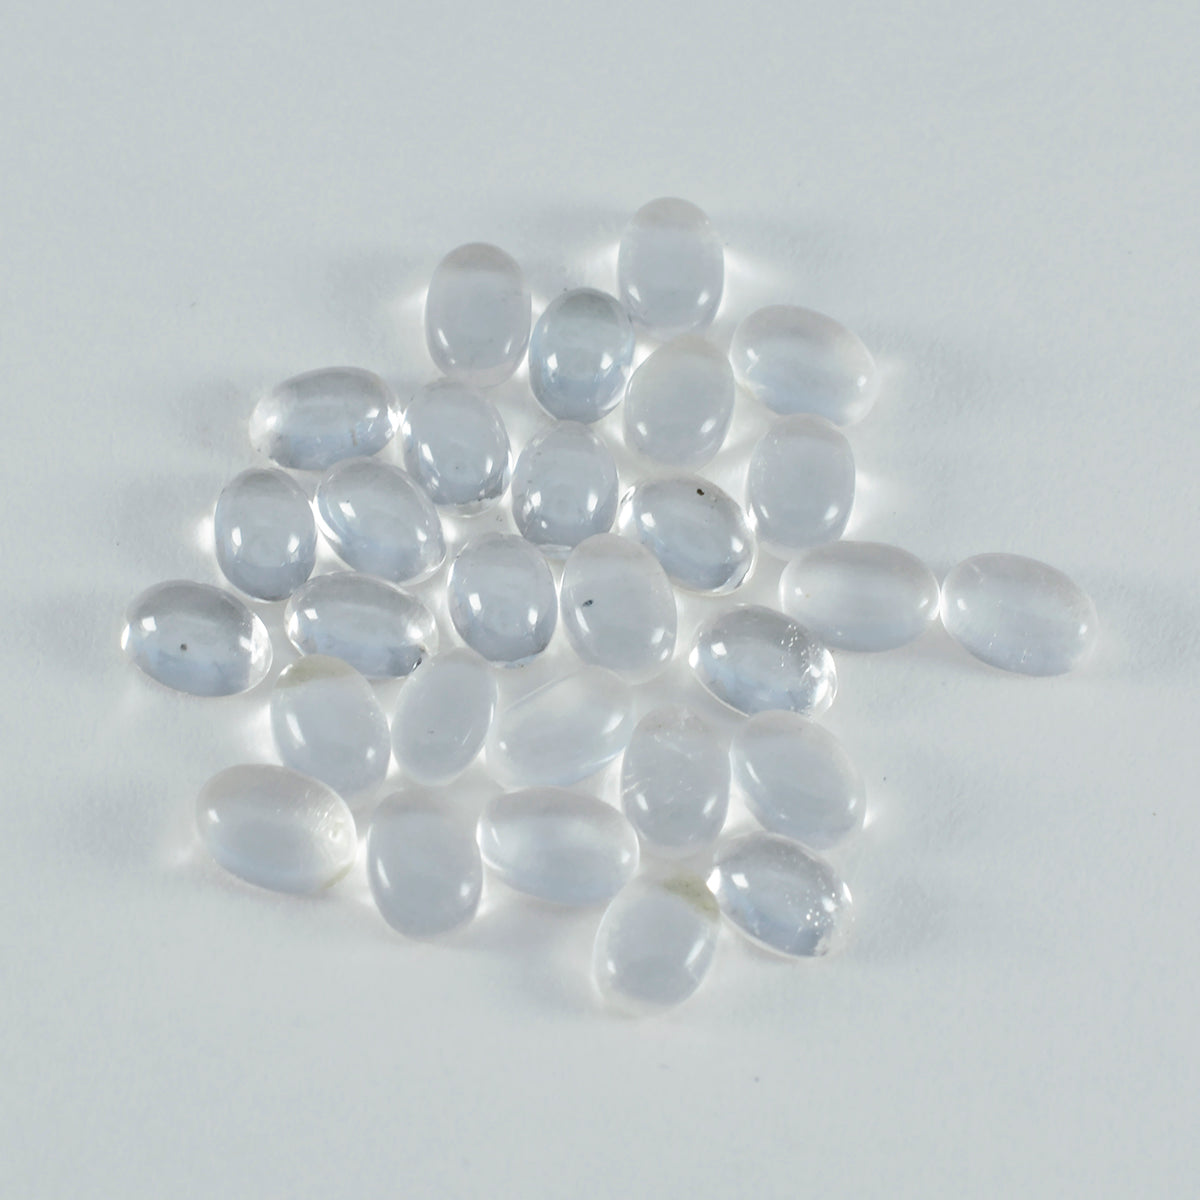 riyogems 1 pz cabochon di quarzo bianco cristallo 4x6 mm forma ovale gemme sfuse di eccellente qualità